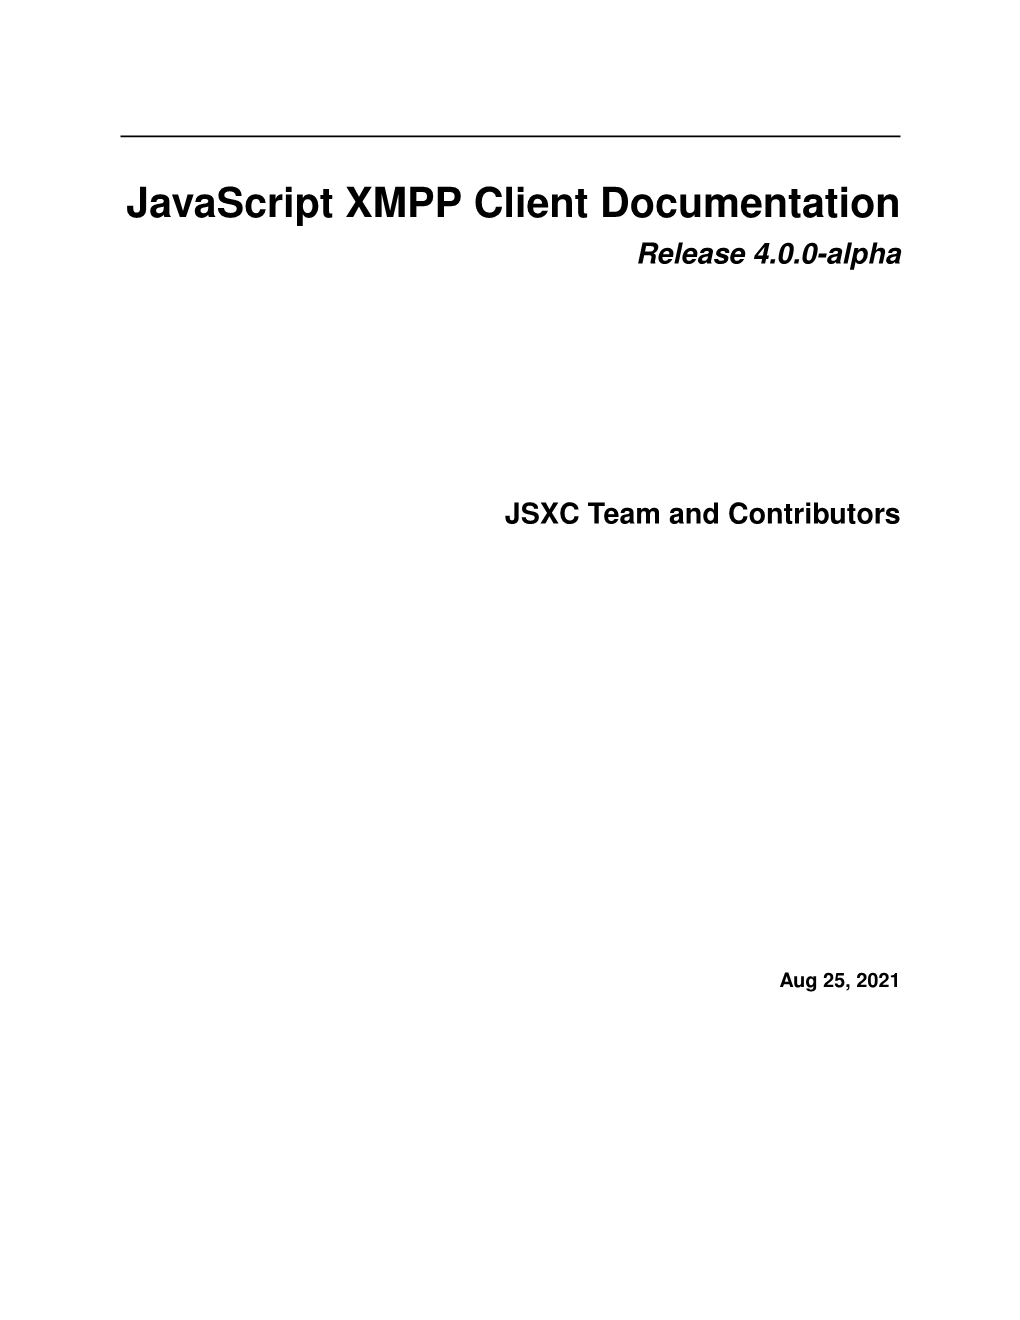 Javascript XMPP Client Documentation Release 4.0.0-Alpha